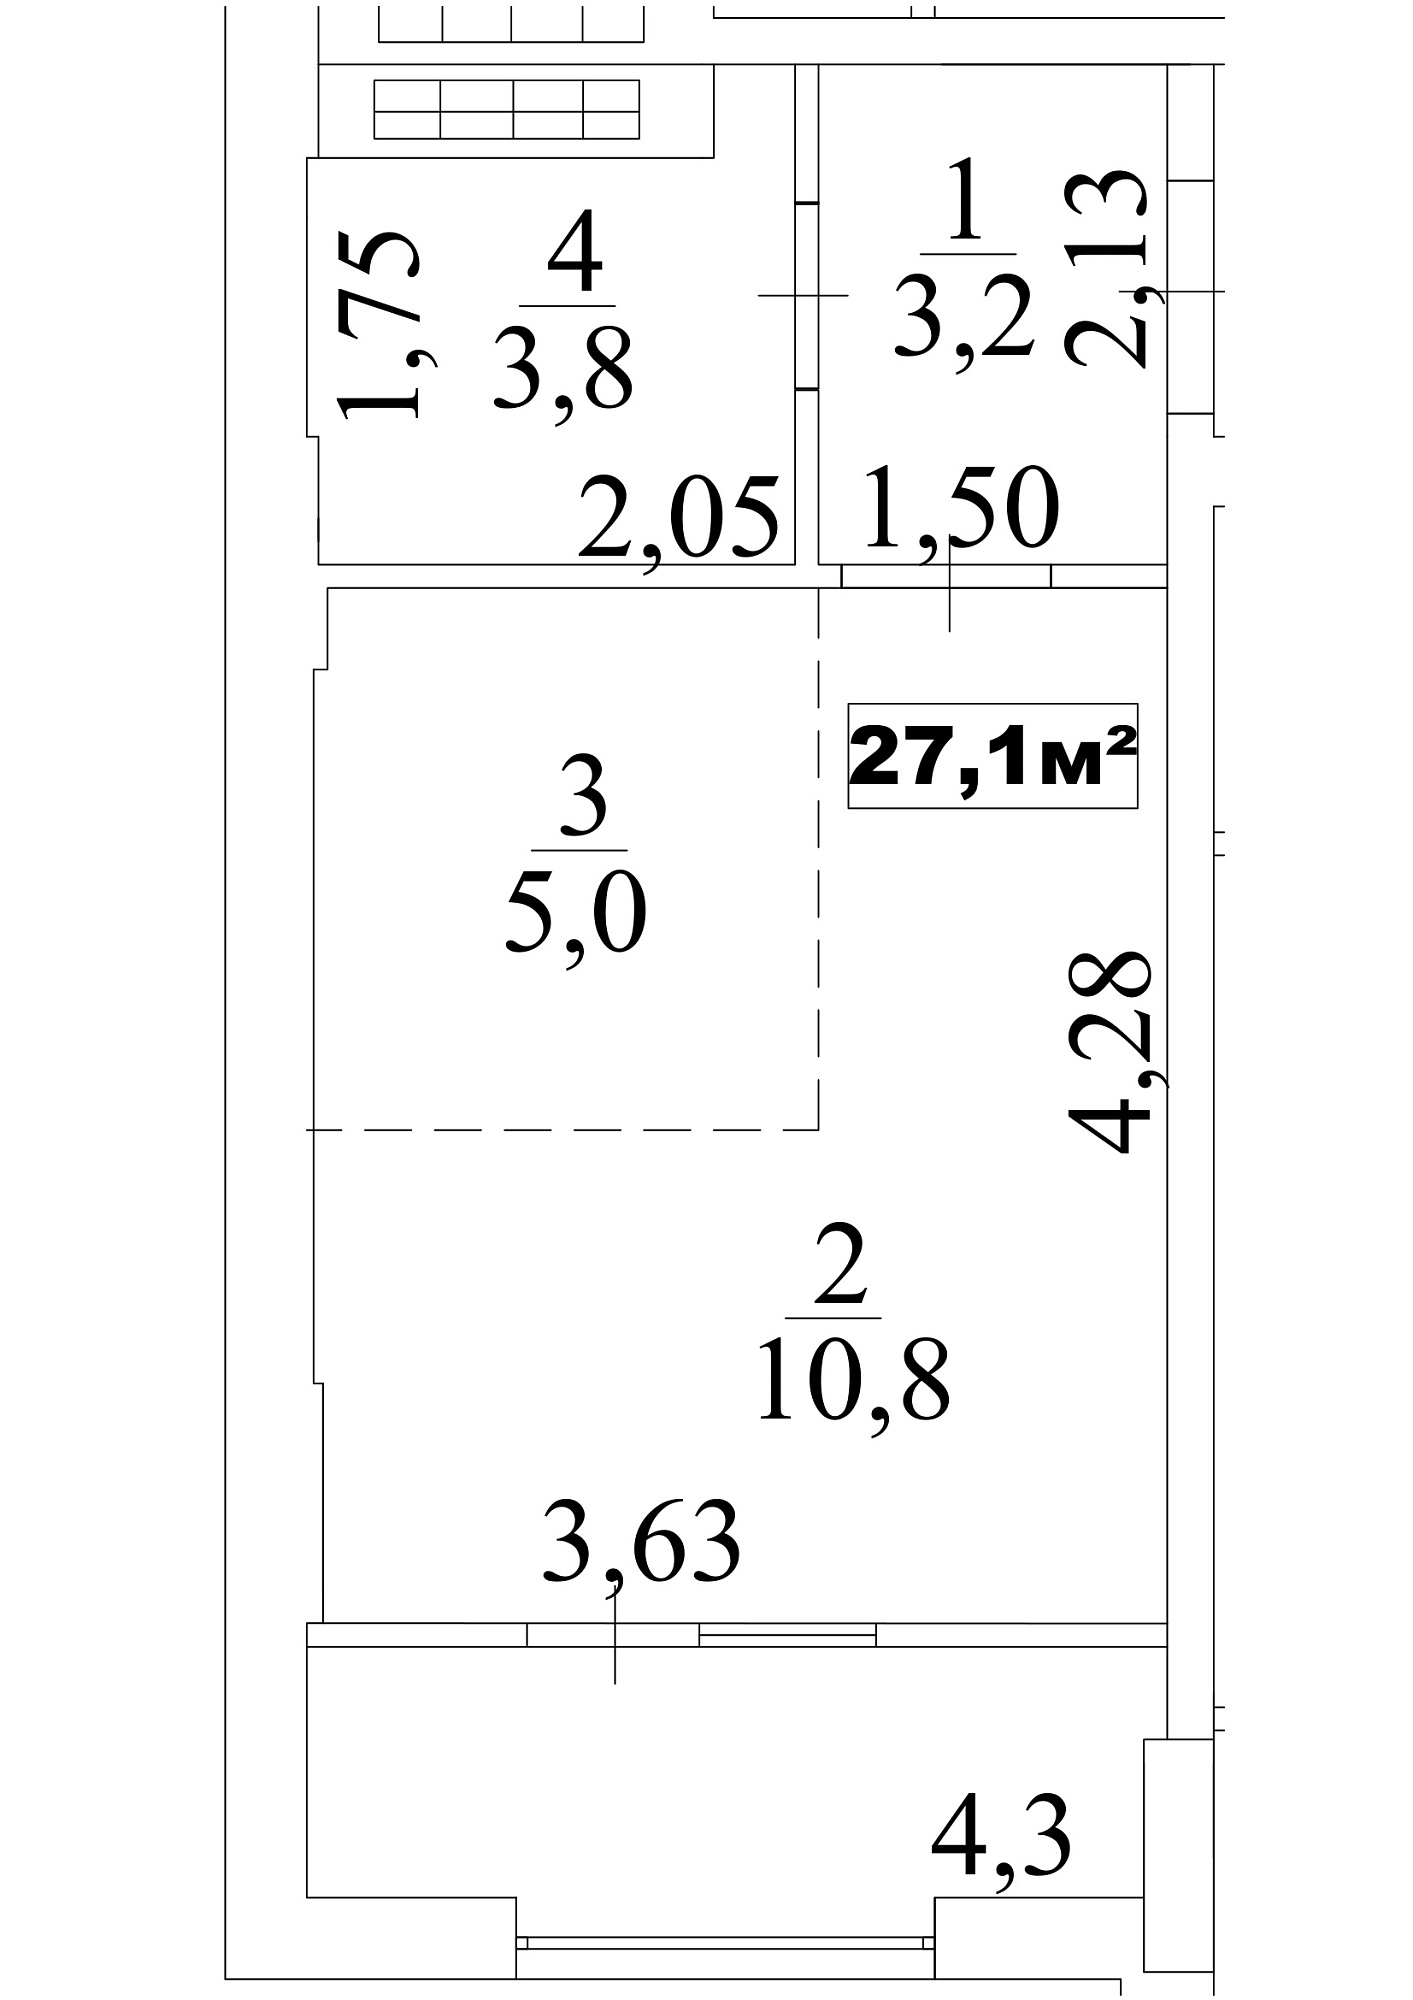 Планировка Smart-квартира площей 27.1м2, AB-10-06/0048а.